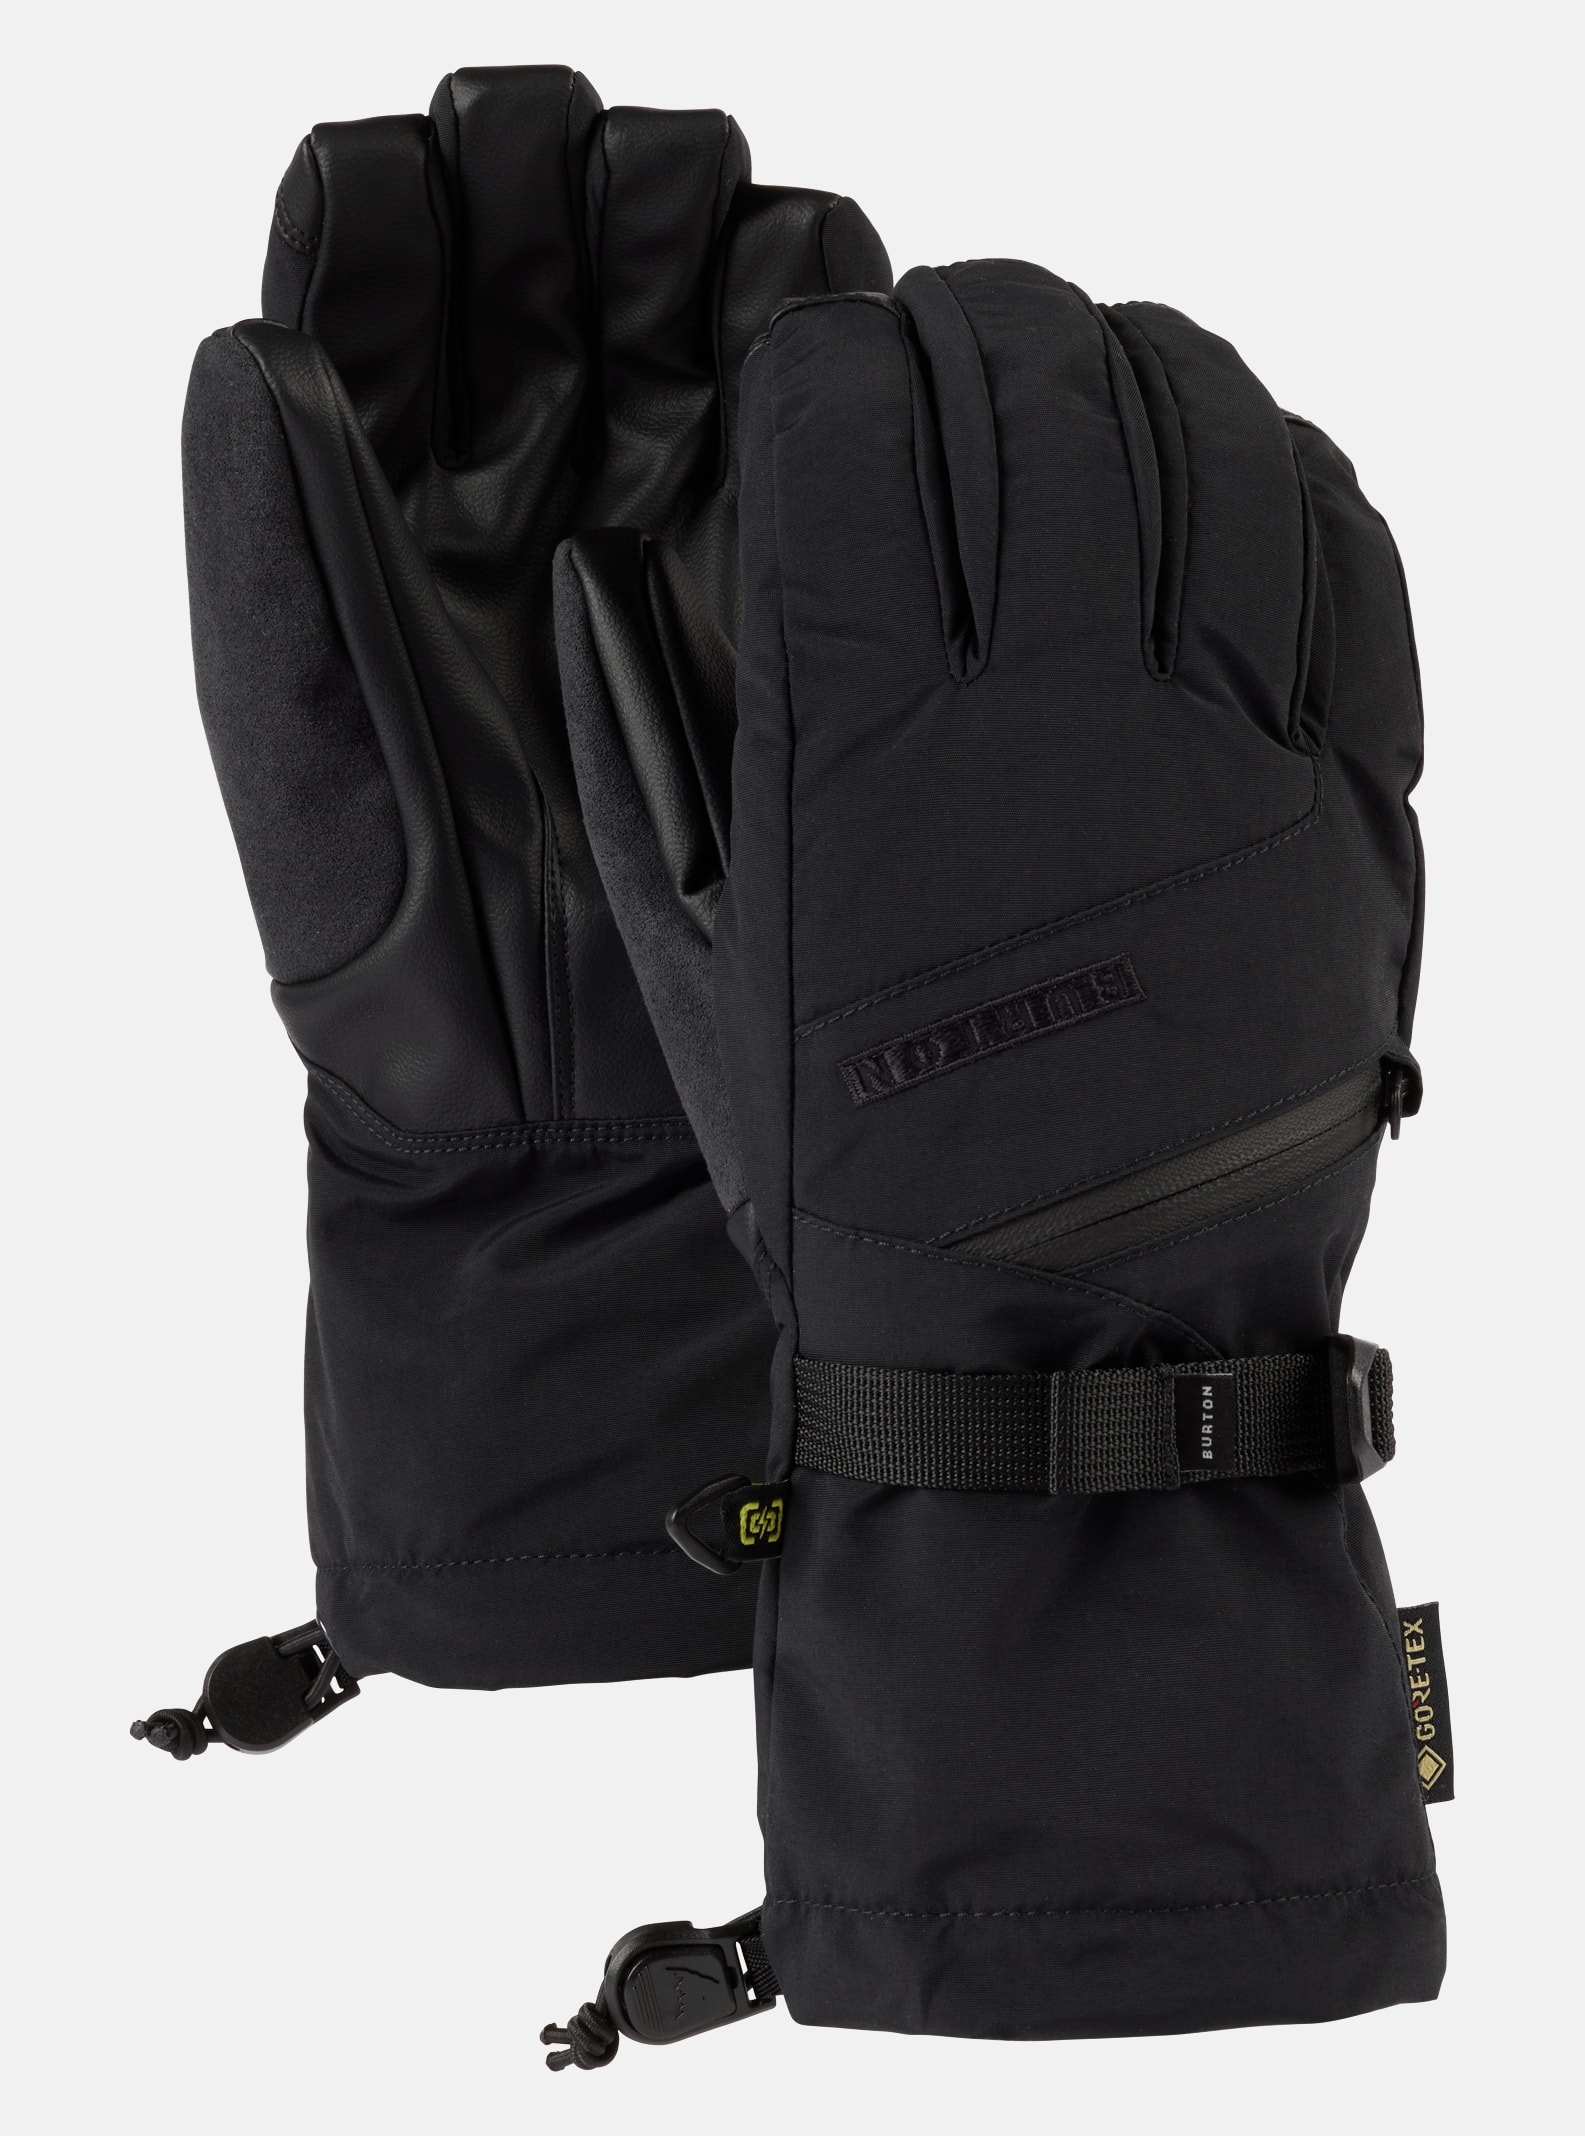 Burton Women's GORE-TEX Gloves, XS